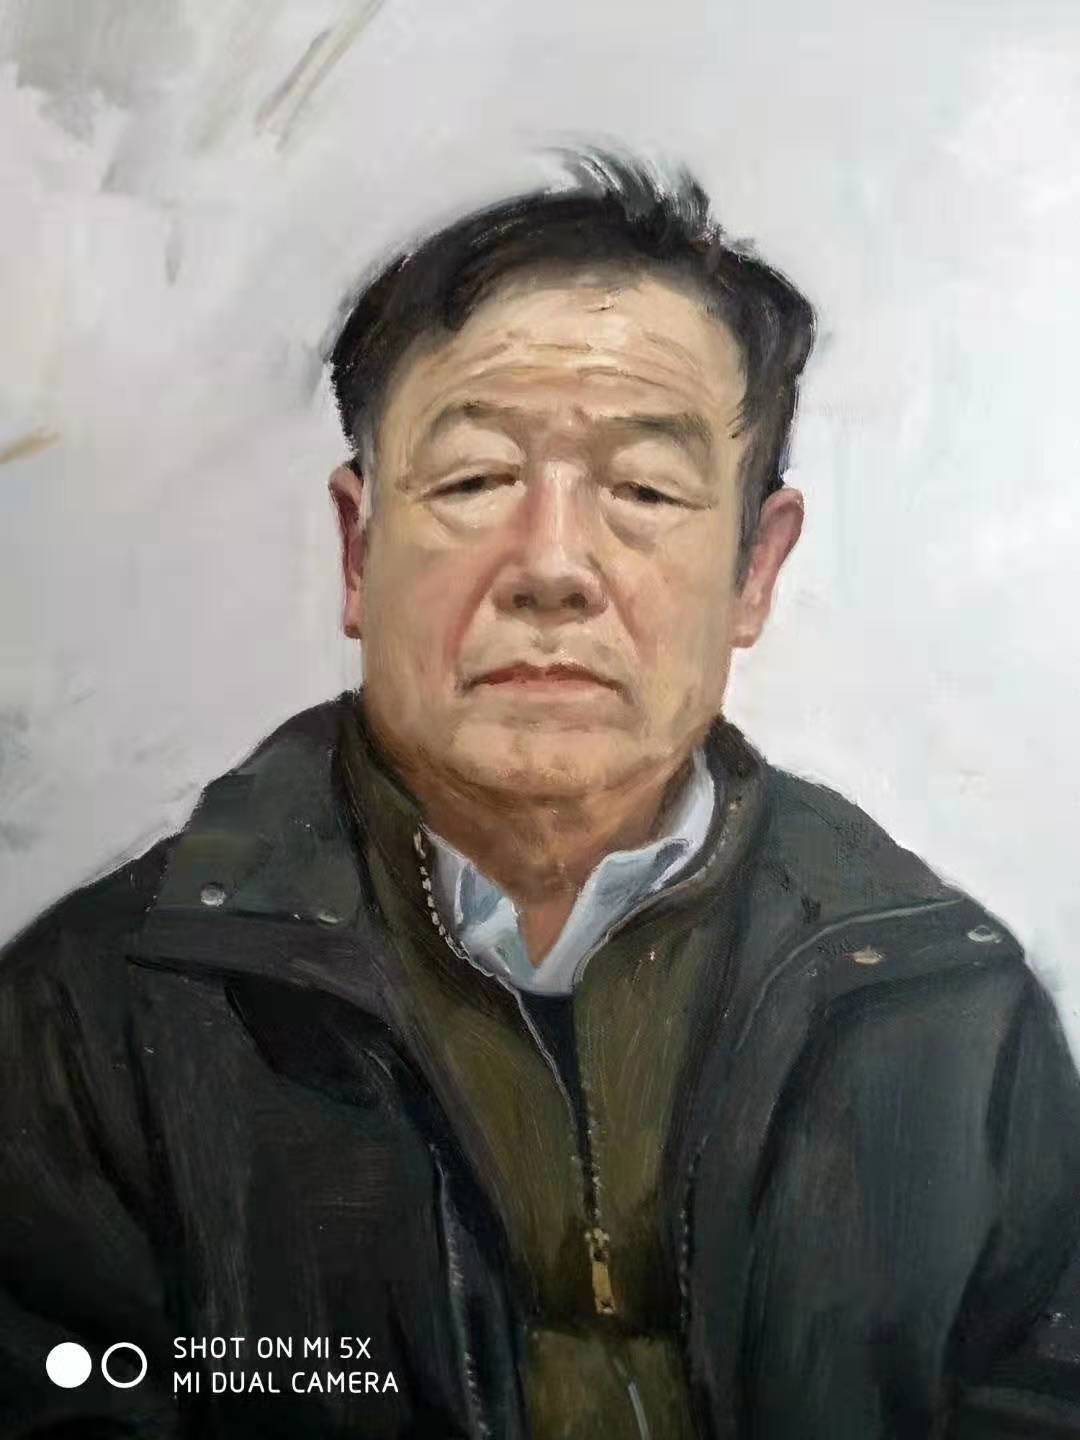 表情与心性相通——油画家杨永弼的人物刻画特色